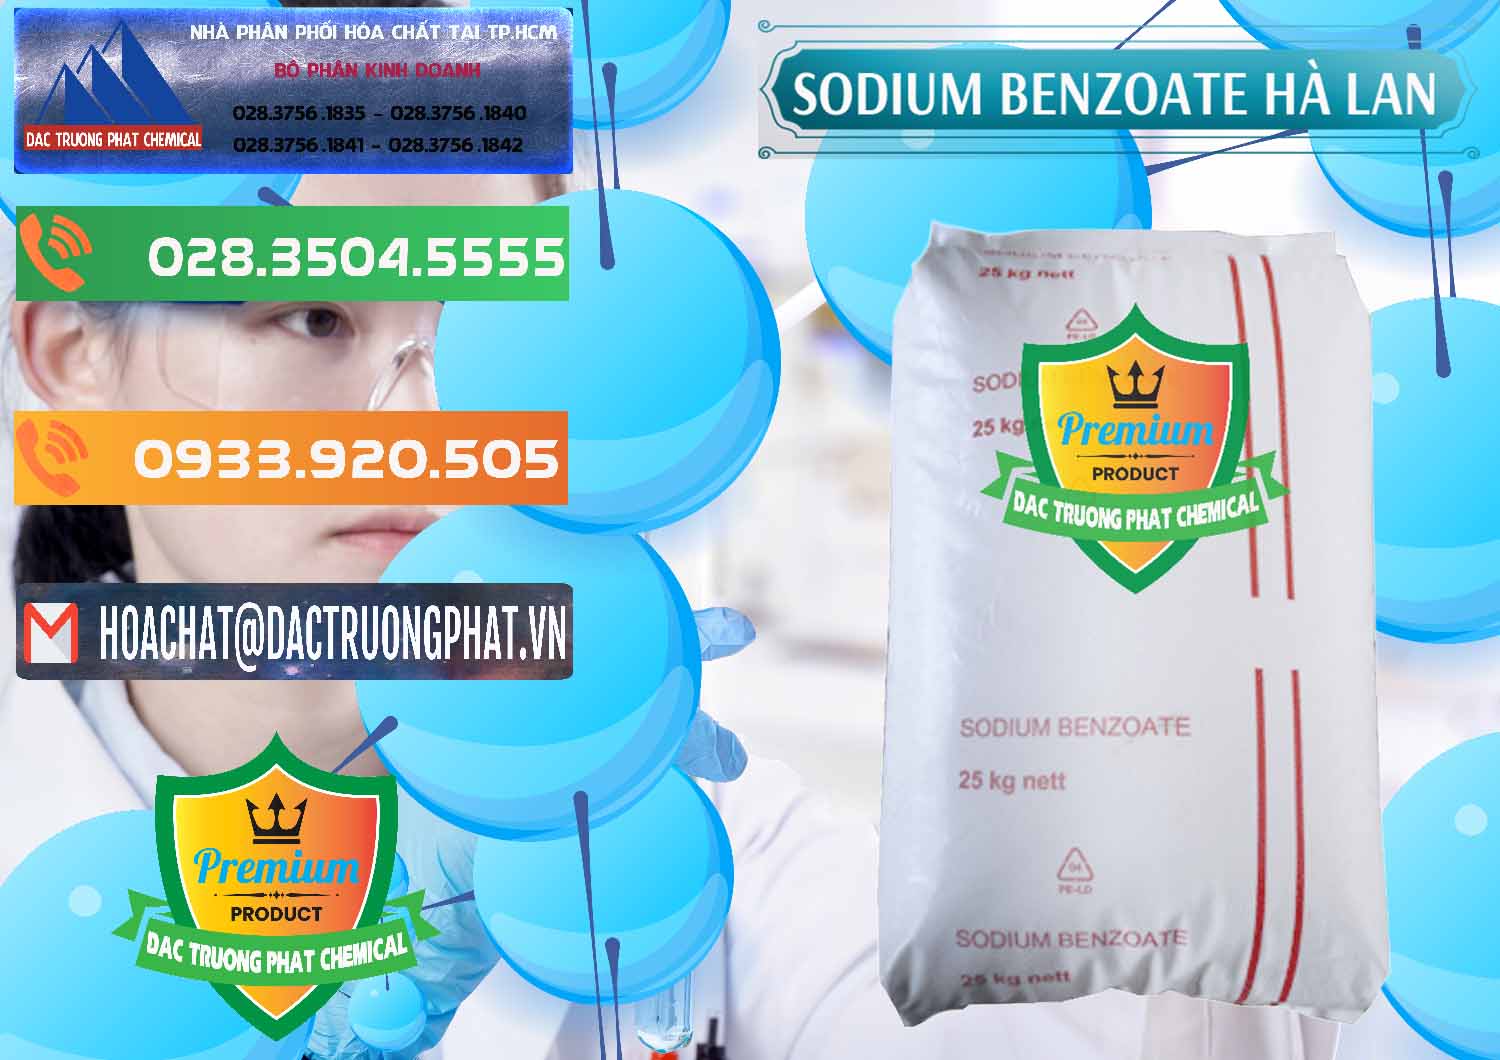 Nơi chuyên bán và cung ứng Sodium Benzoate - Mốc Bột Chữ Cam Hà Lan Netherlands - 0360 - Cung cấp ( kinh doanh ) hóa chất tại TP.HCM - hoachatxulynuoc.com.vn